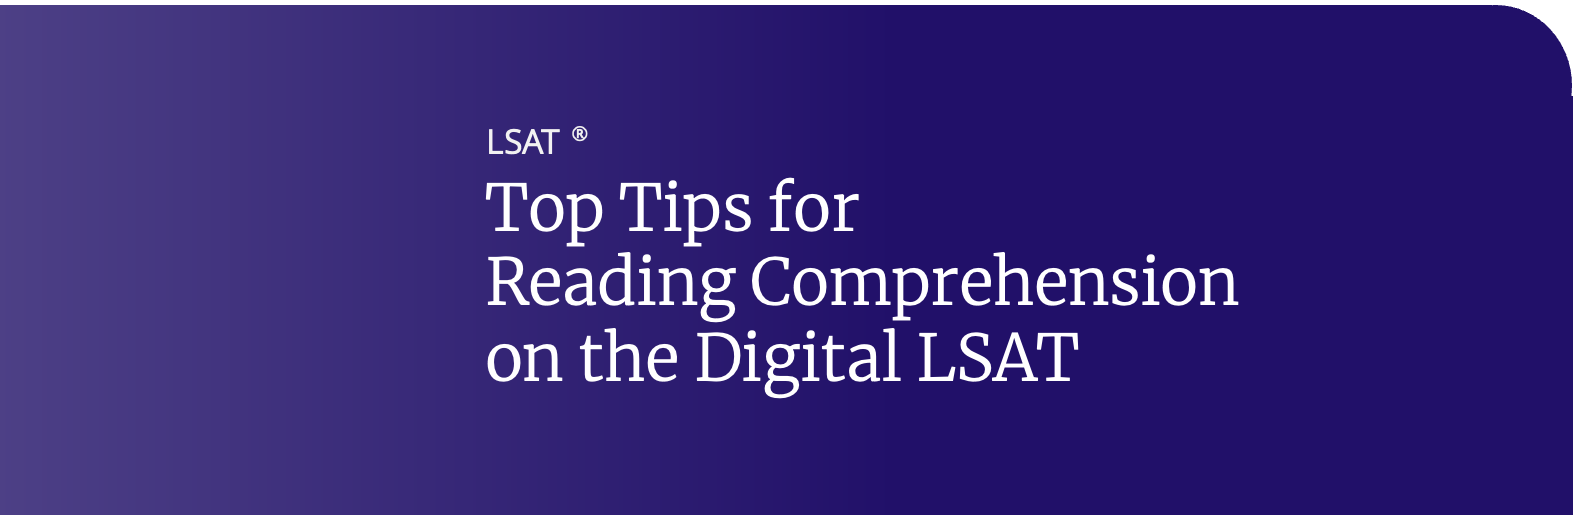 digital lsat reading comp tips